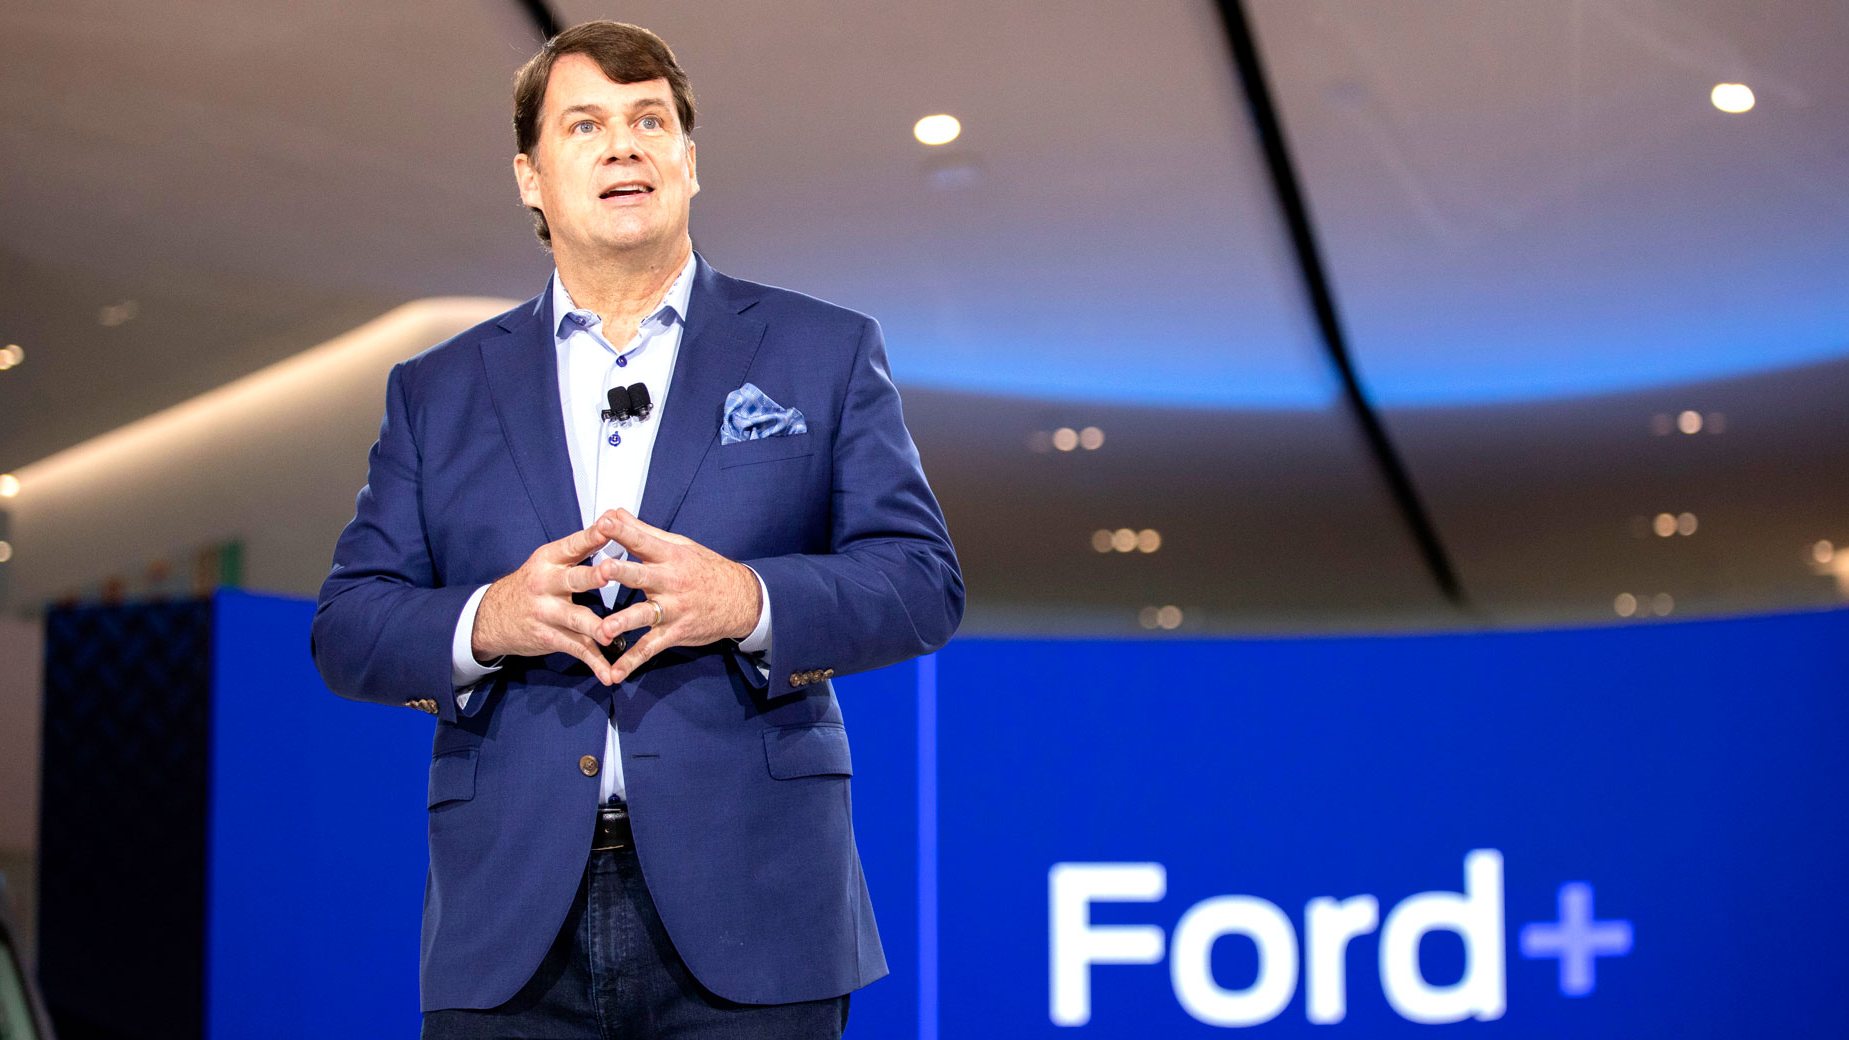 O CEO da Ford, Jim Farley, reconhece que o desempenho da marca em 2022 não foi brilhante. Para atenuar o prejuízo, a estratégia passa pelo encerramento de fábricas e despedimentos